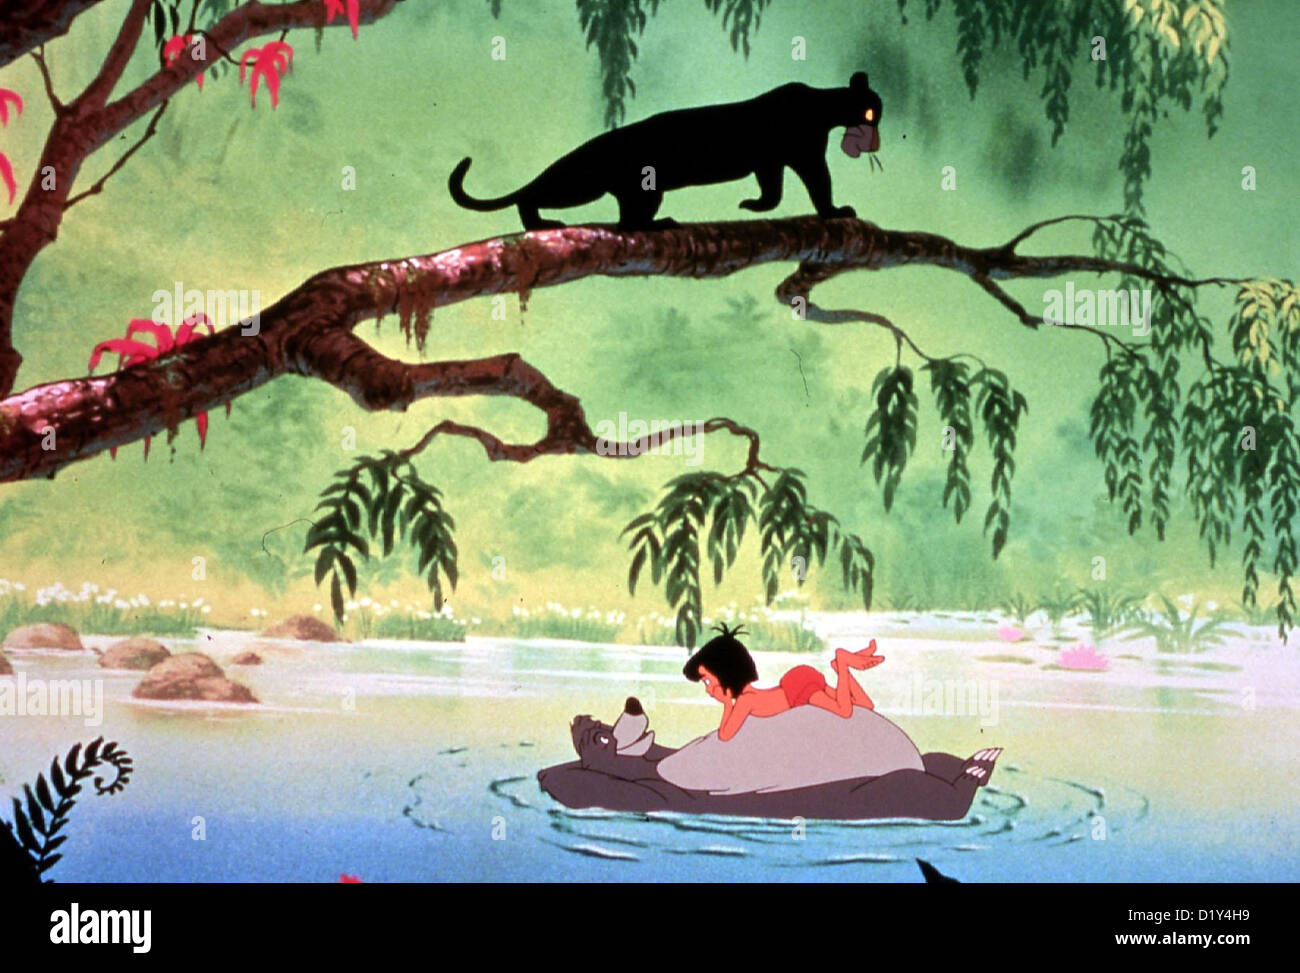 Das Dschungelbuch Dschungelbuch Mowgli Spielwarenmesse Mit Baloo Und Auf Dem Ast Lauert der Schwarze Panther Baghira *** lokale Beschriftung Stockfoto